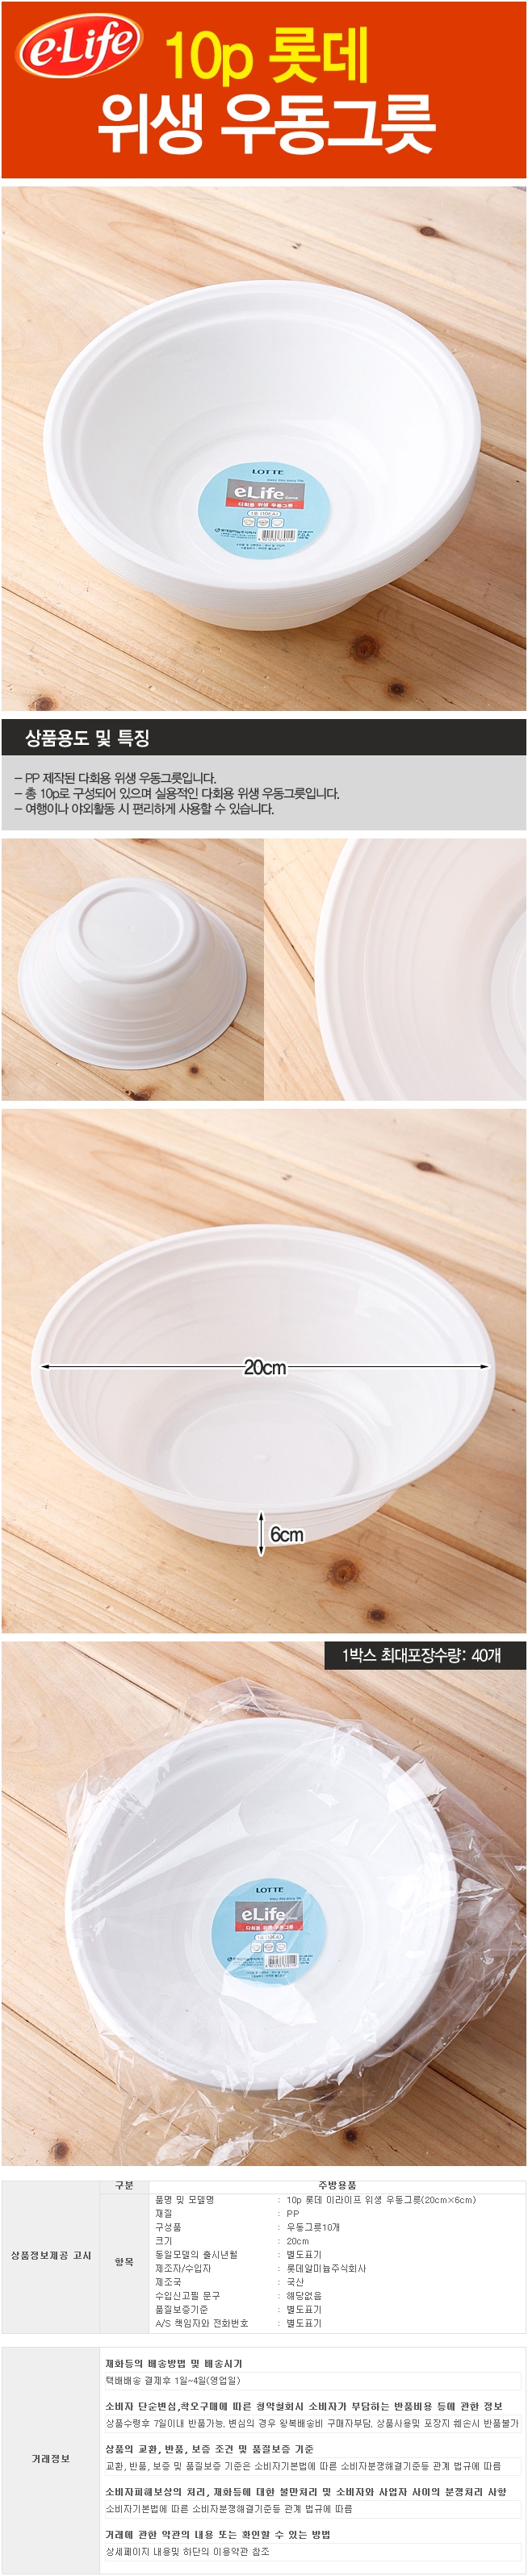 10p 롯데 이라이프 다회용 위생우동그릇(20cm)